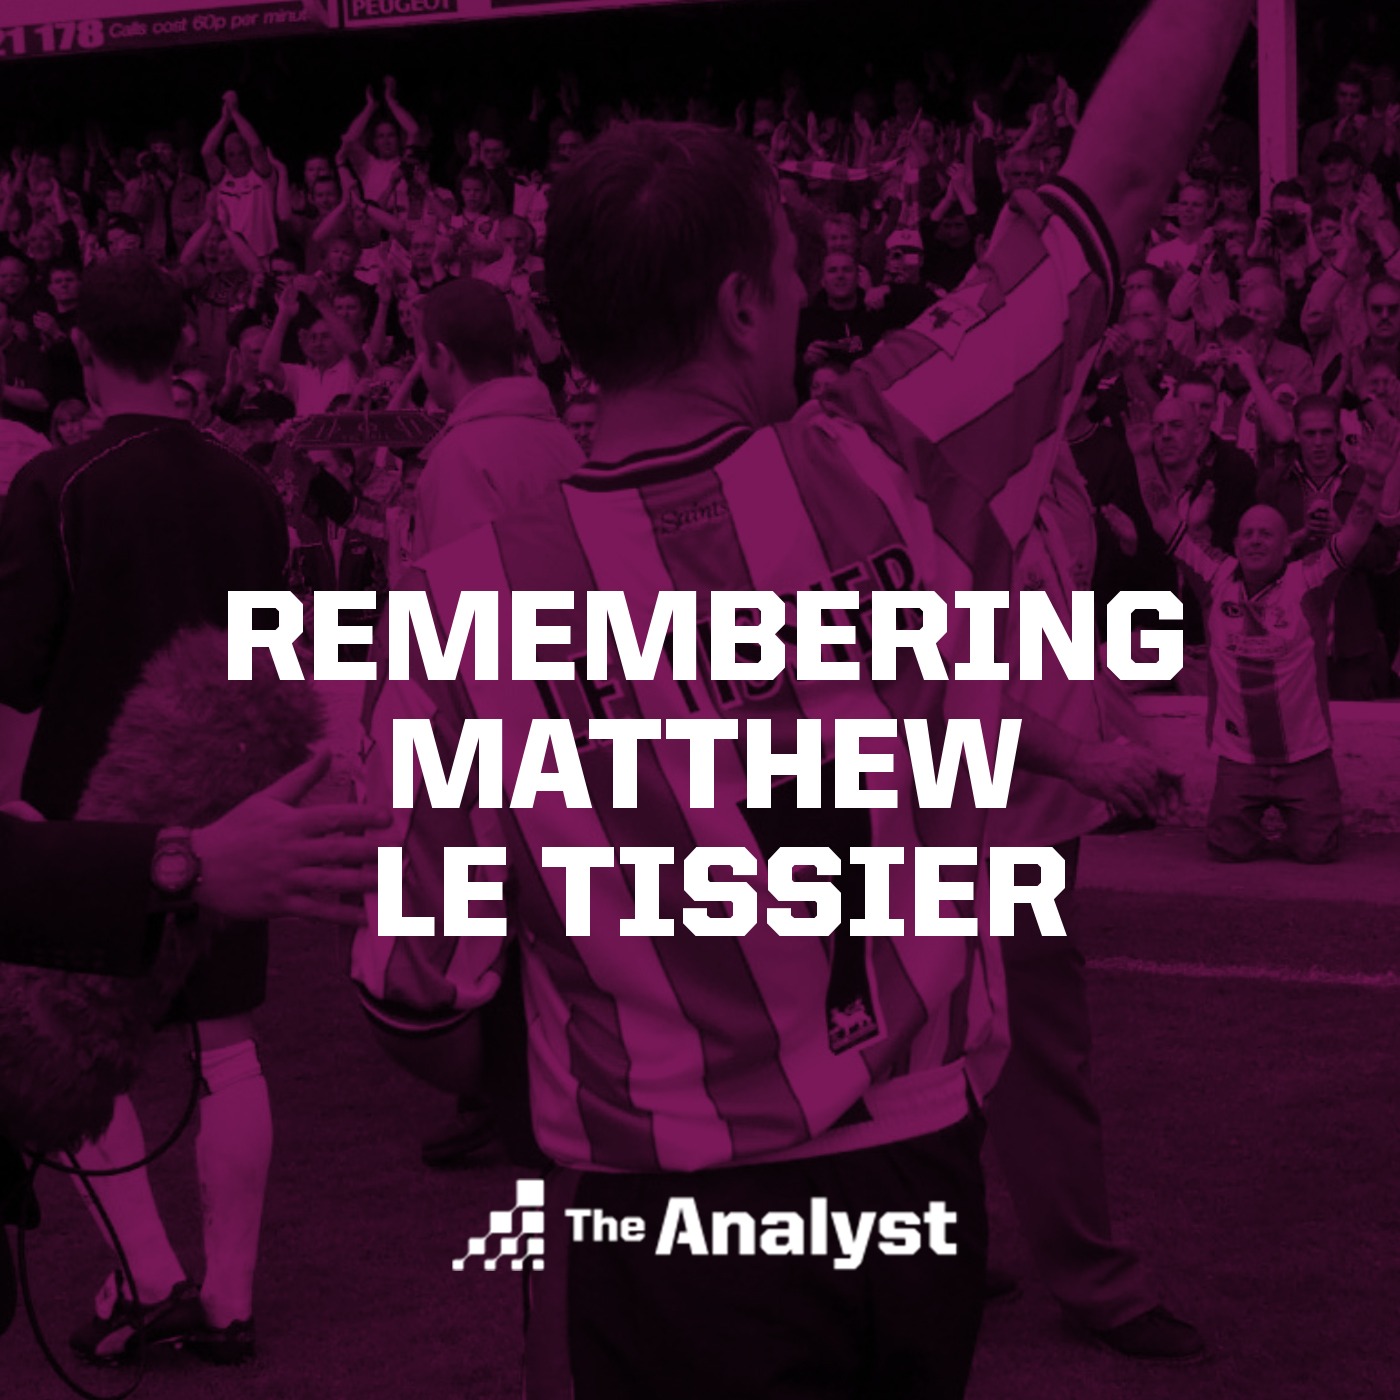 Remembering Matthew Le Tissier: Premier League Legend